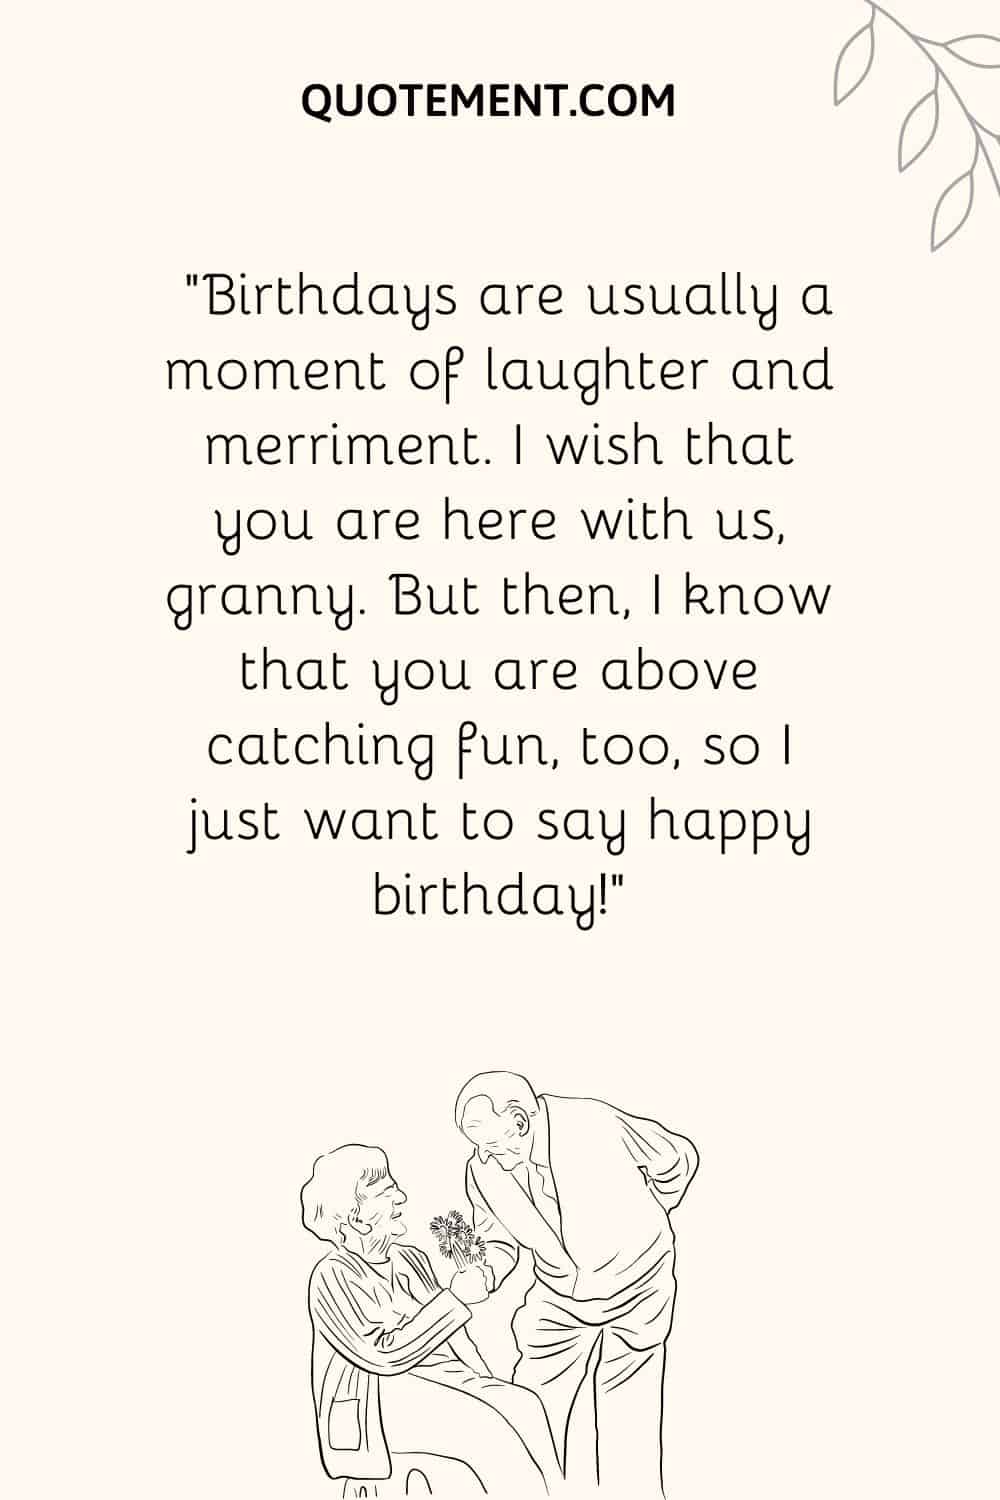 "Los cumpleaños suelen ser un momento de risas y alegría. Ojalá estuvieras aquí con nosotros, abuelita. Pero también sé que tú estás por encima de la diversión, así que sólo quiero decirte ¡feliz cumpleaños!".